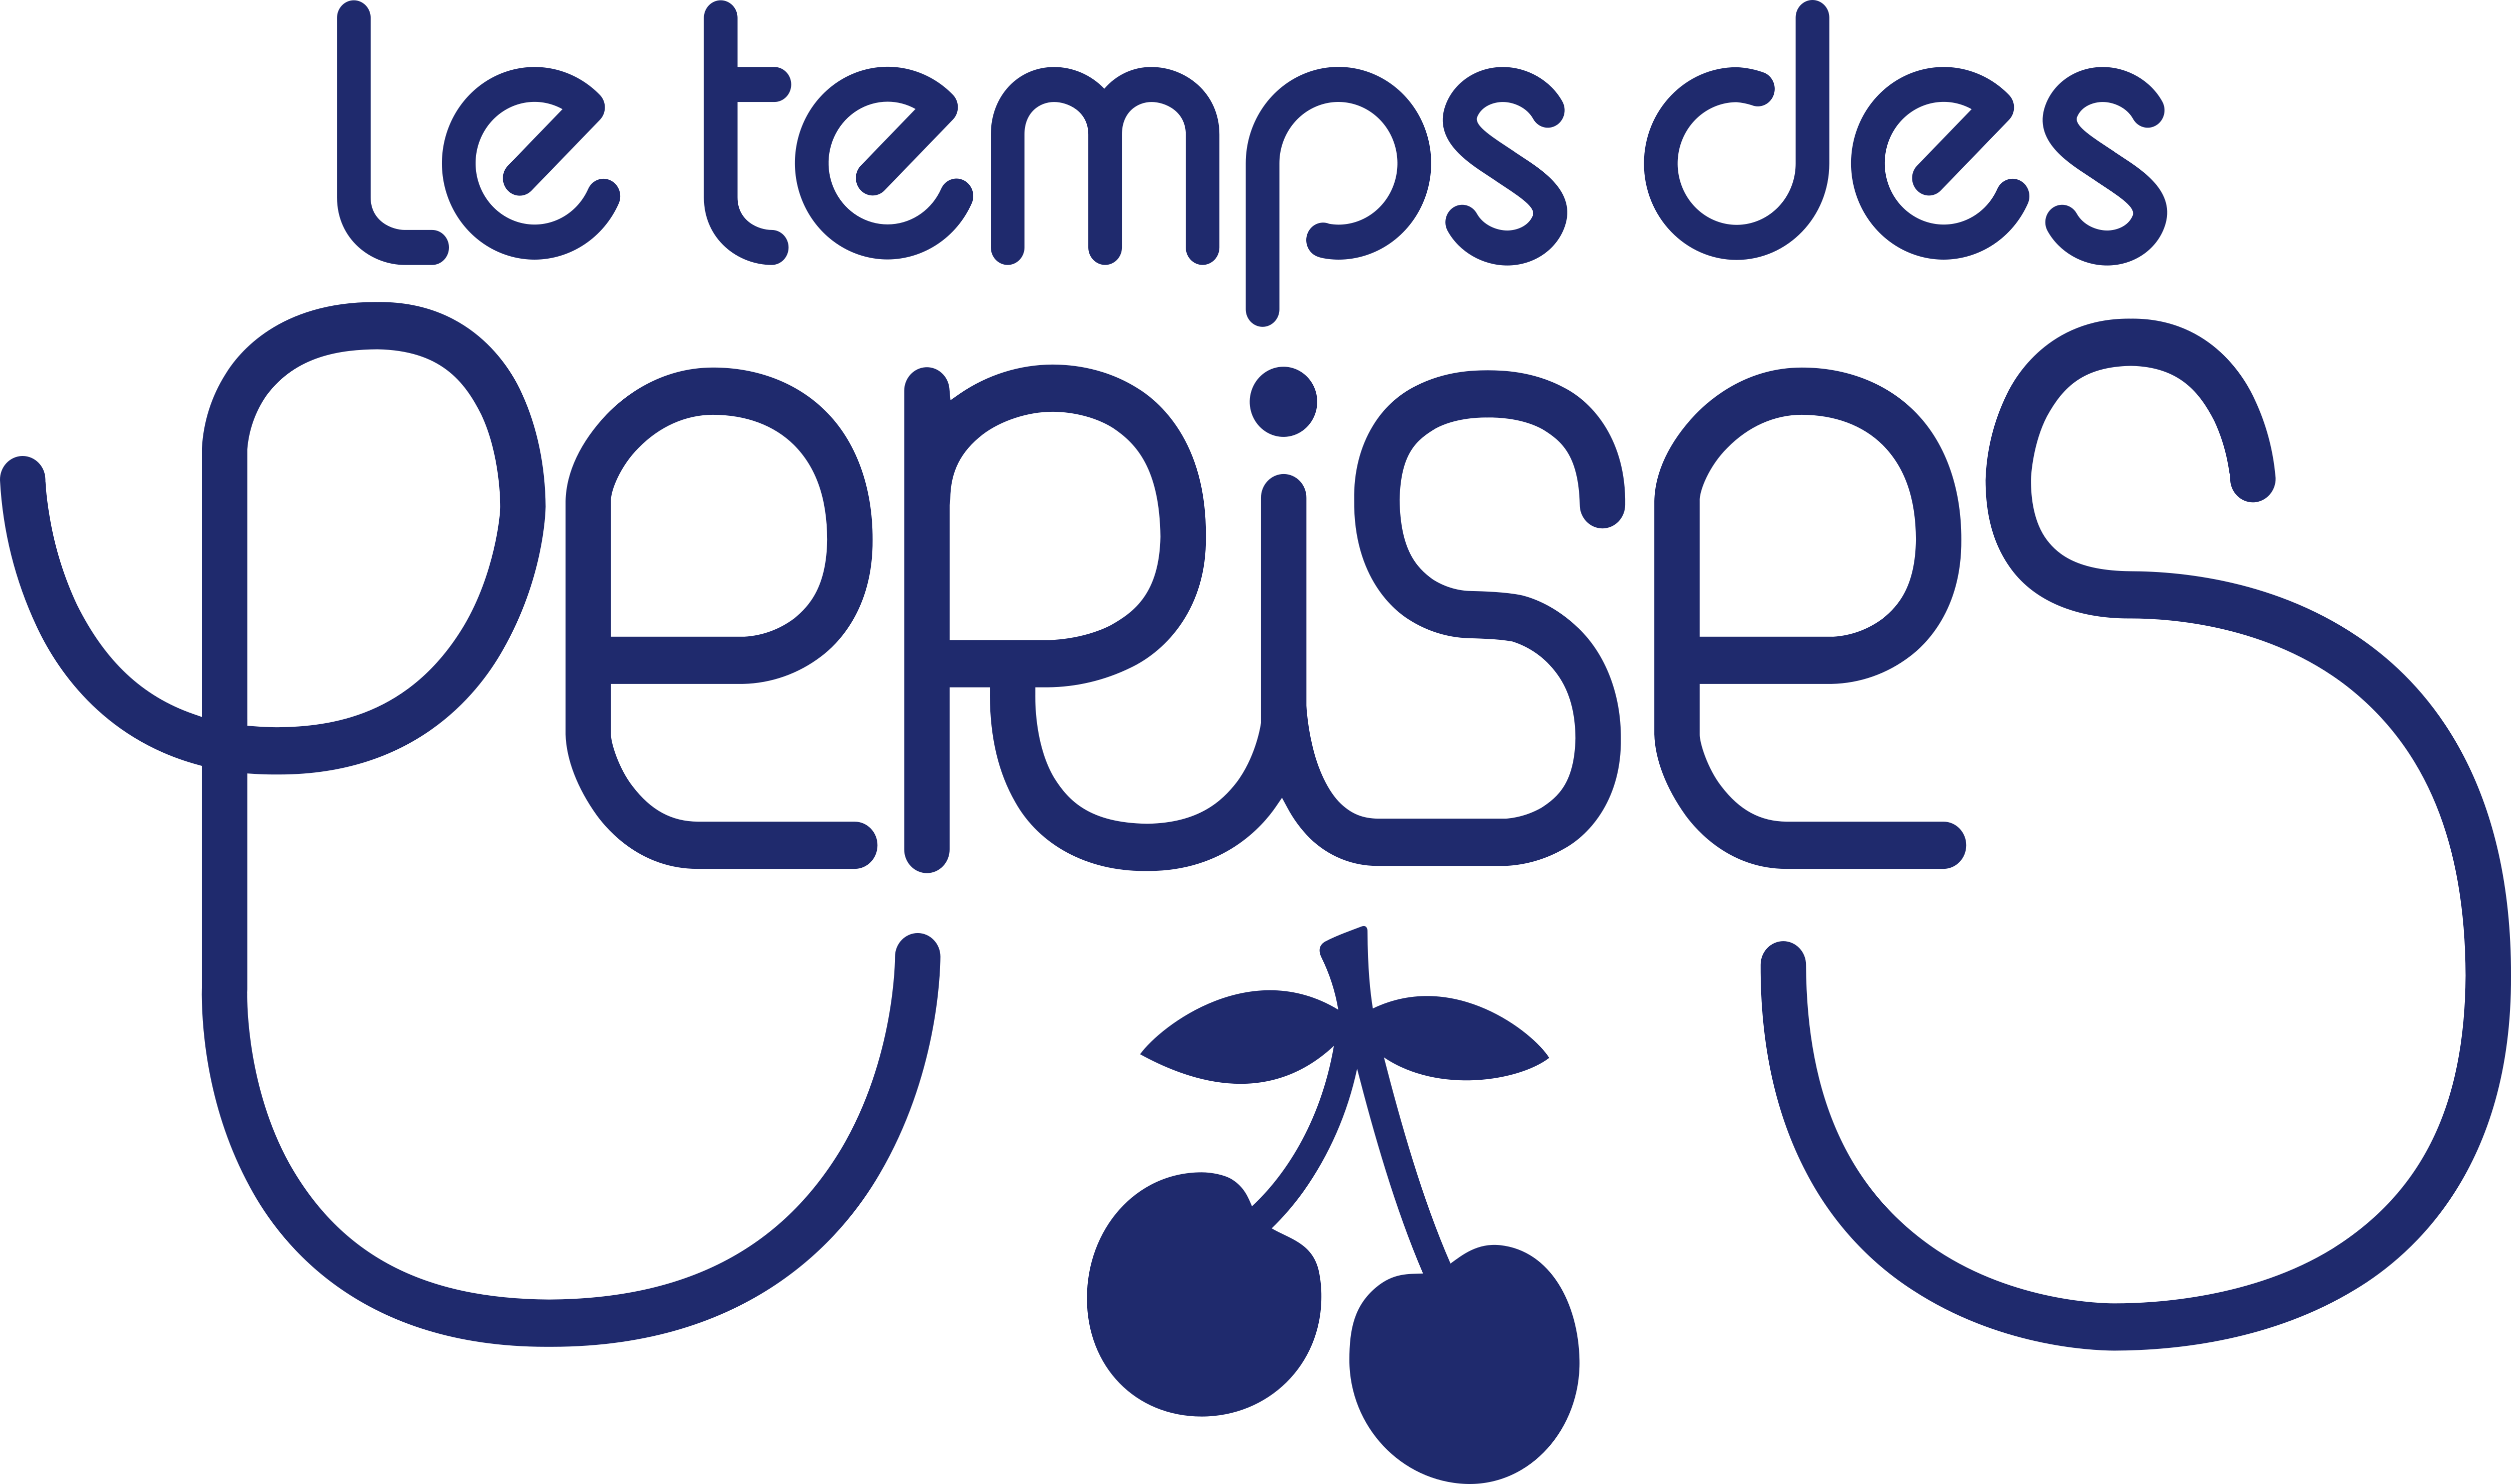 Tout le temps. Le Temps des Perises одежда. Le Temps логотип. Le Temps des Cerises сумка. Le Temps Cerises кофе.